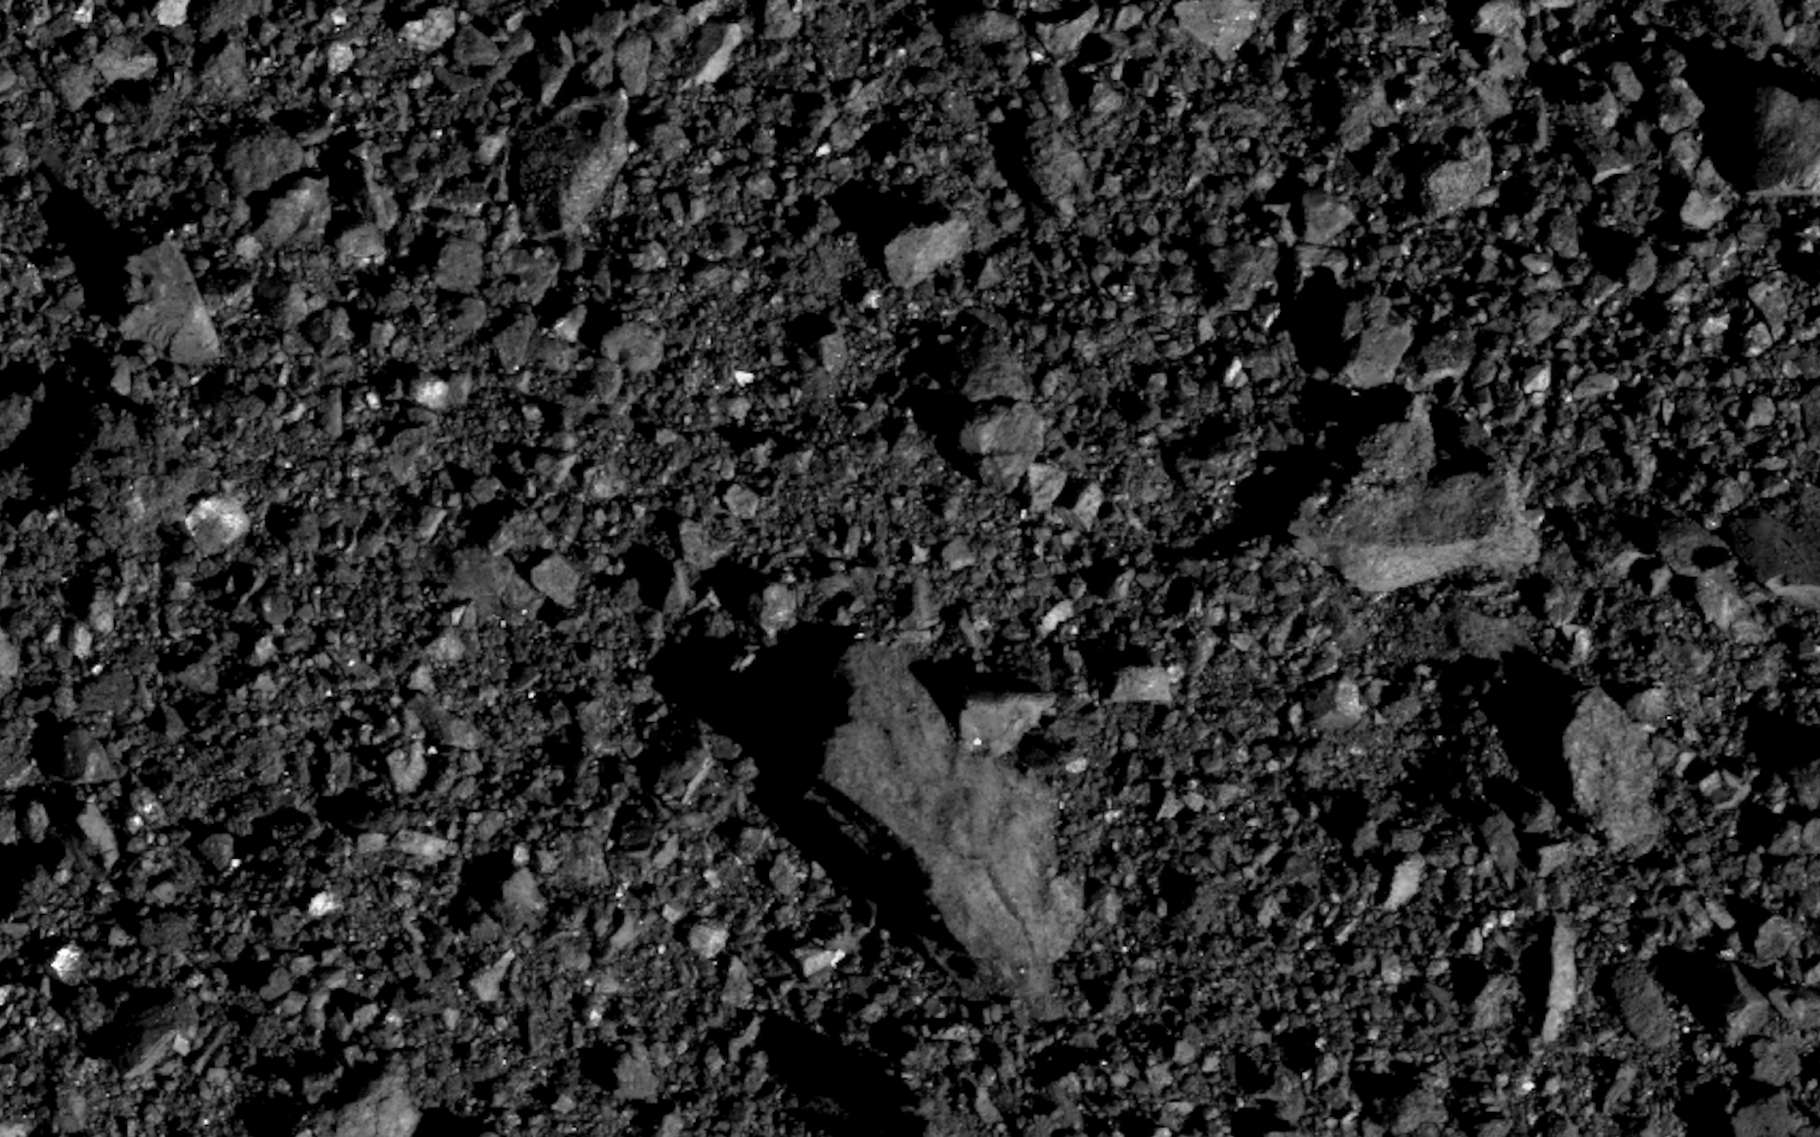 Du côté de l’hémisphère nord de l’astéroïde Bennu, le site sur lequel la mission Osiris-Rex recueillera des échantillons de roche l’été prochain. © Nasa, Goddard, University of Arizona